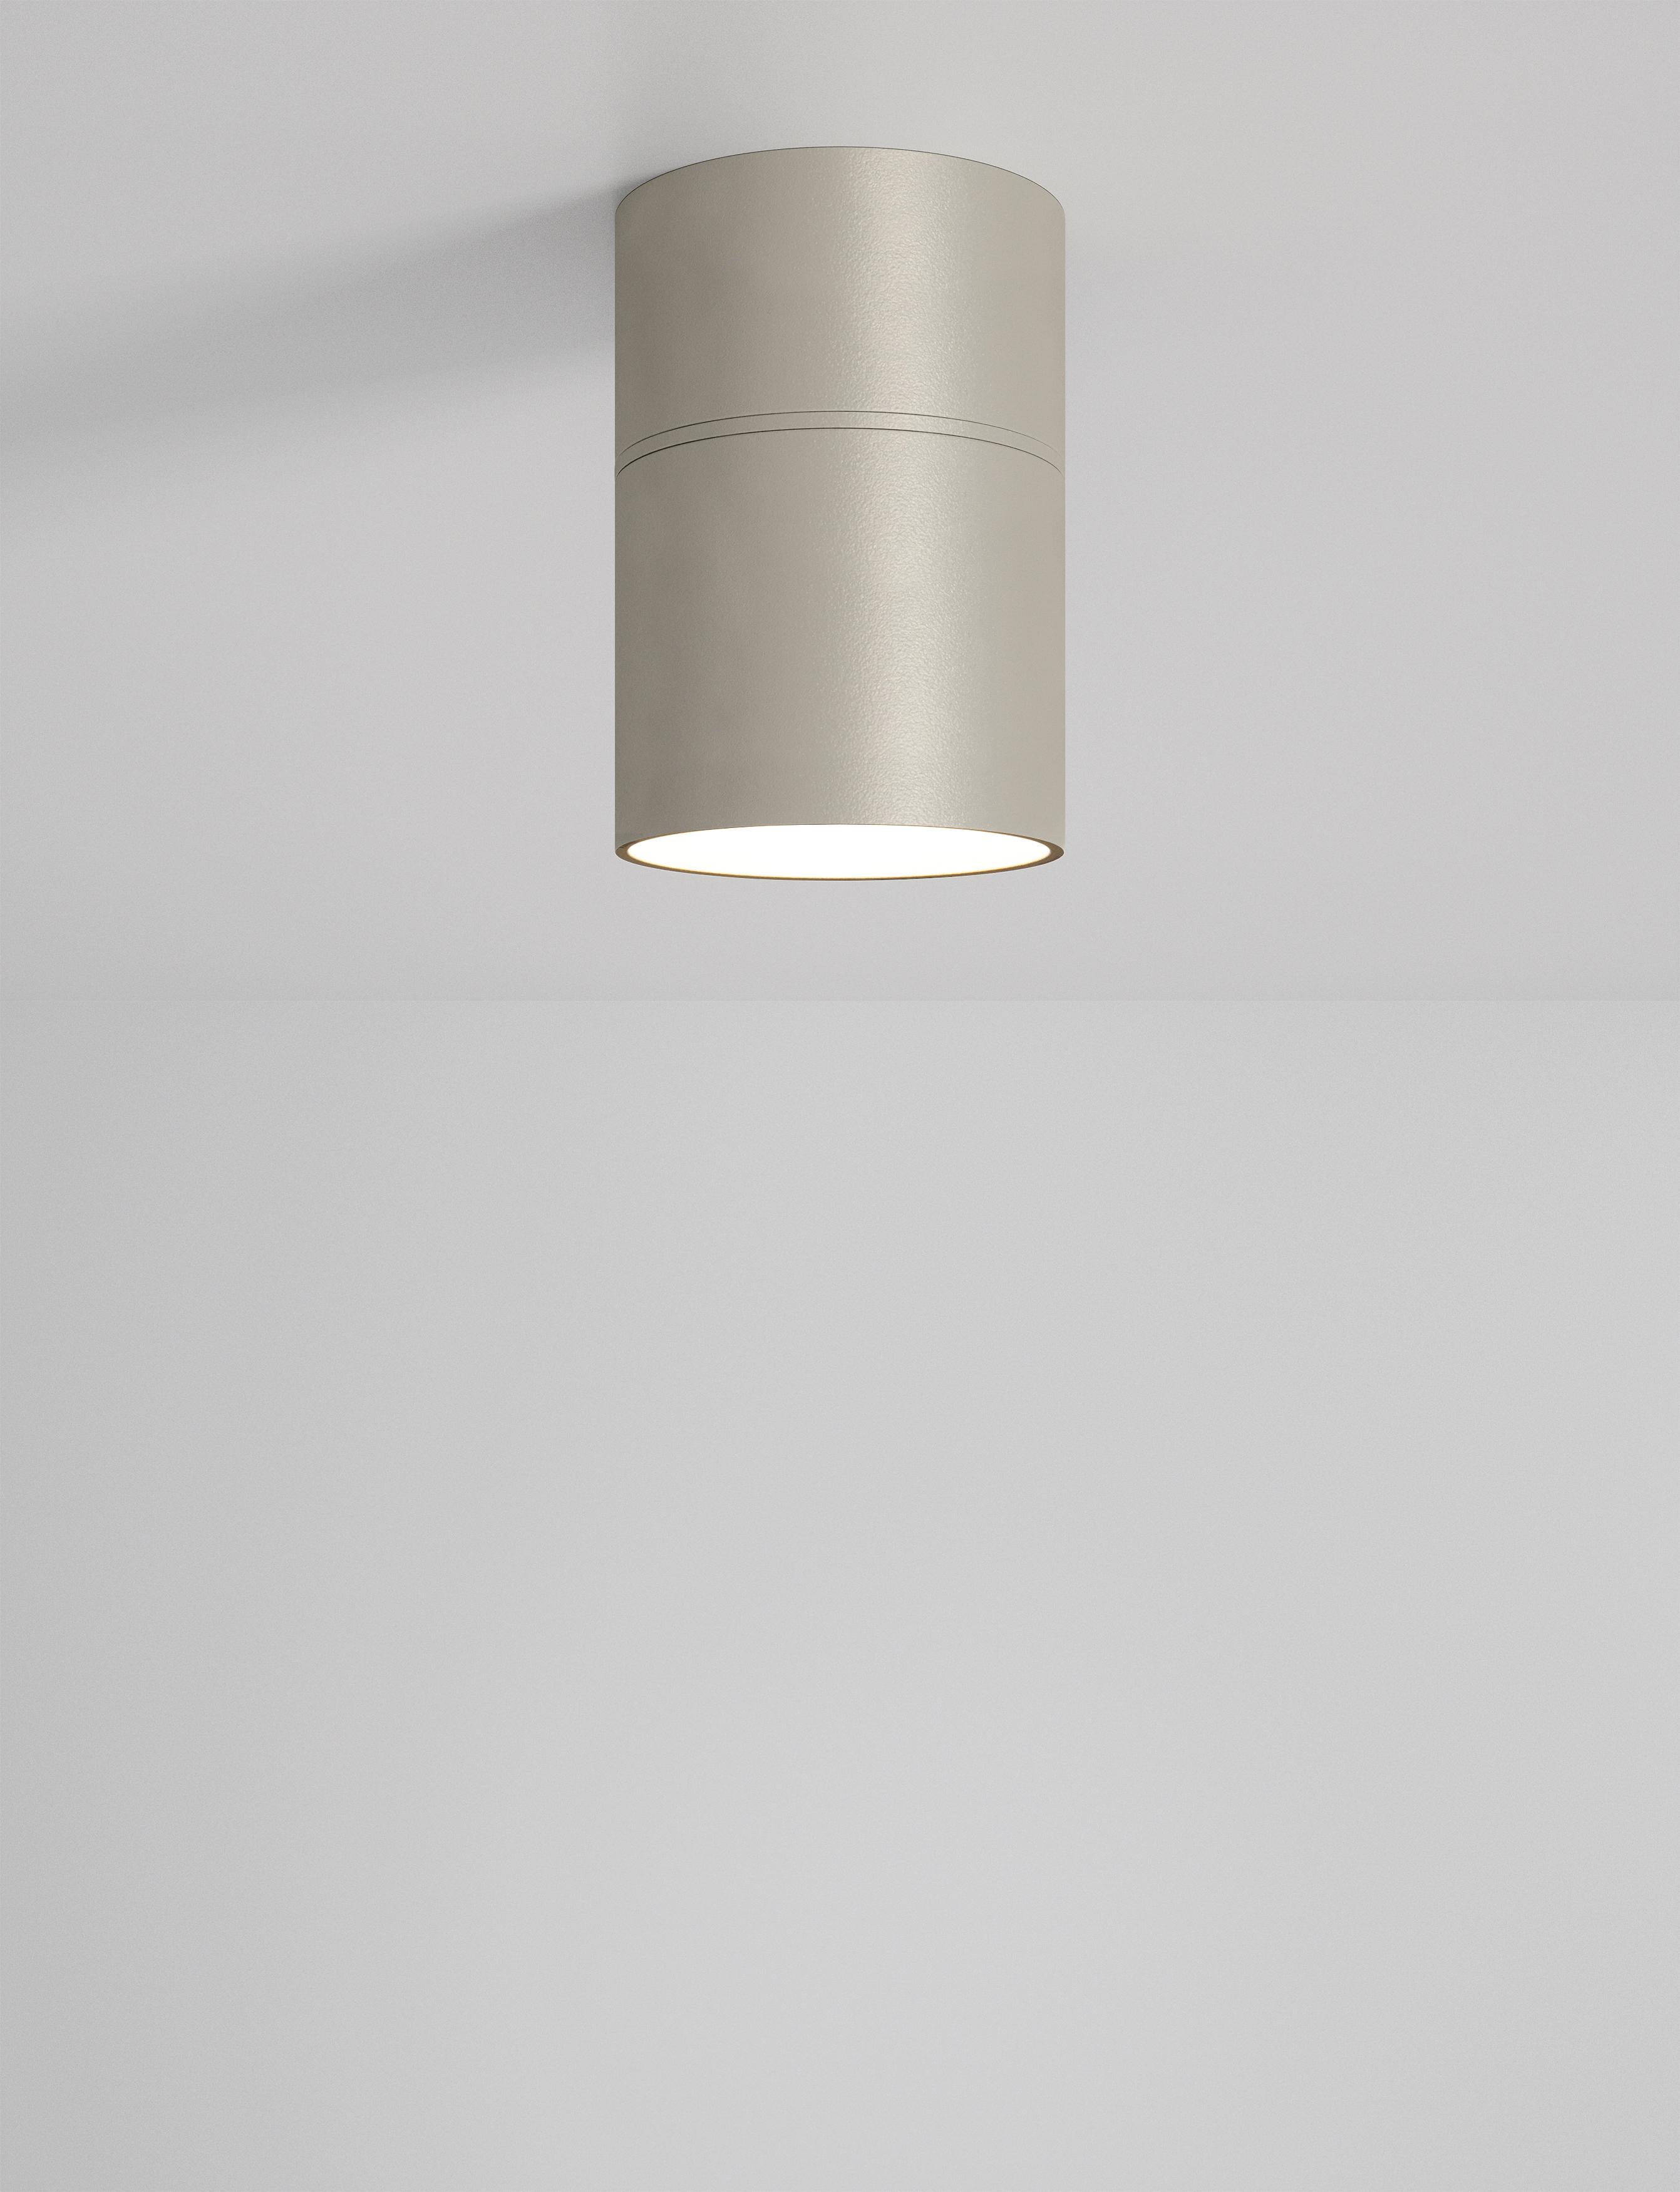 Kleine schwenkbare Axolight-Deckenleuchte in Grau von Ryosuke Fukusada

Einzelner Scheinwerfer
Die Leuchten wurden so konzipiert, dass sie einen hohen visuellen Komfort bieten. Der Konstantstrom-LED-Chip und seine Linse sind im Inneren des Zylinders